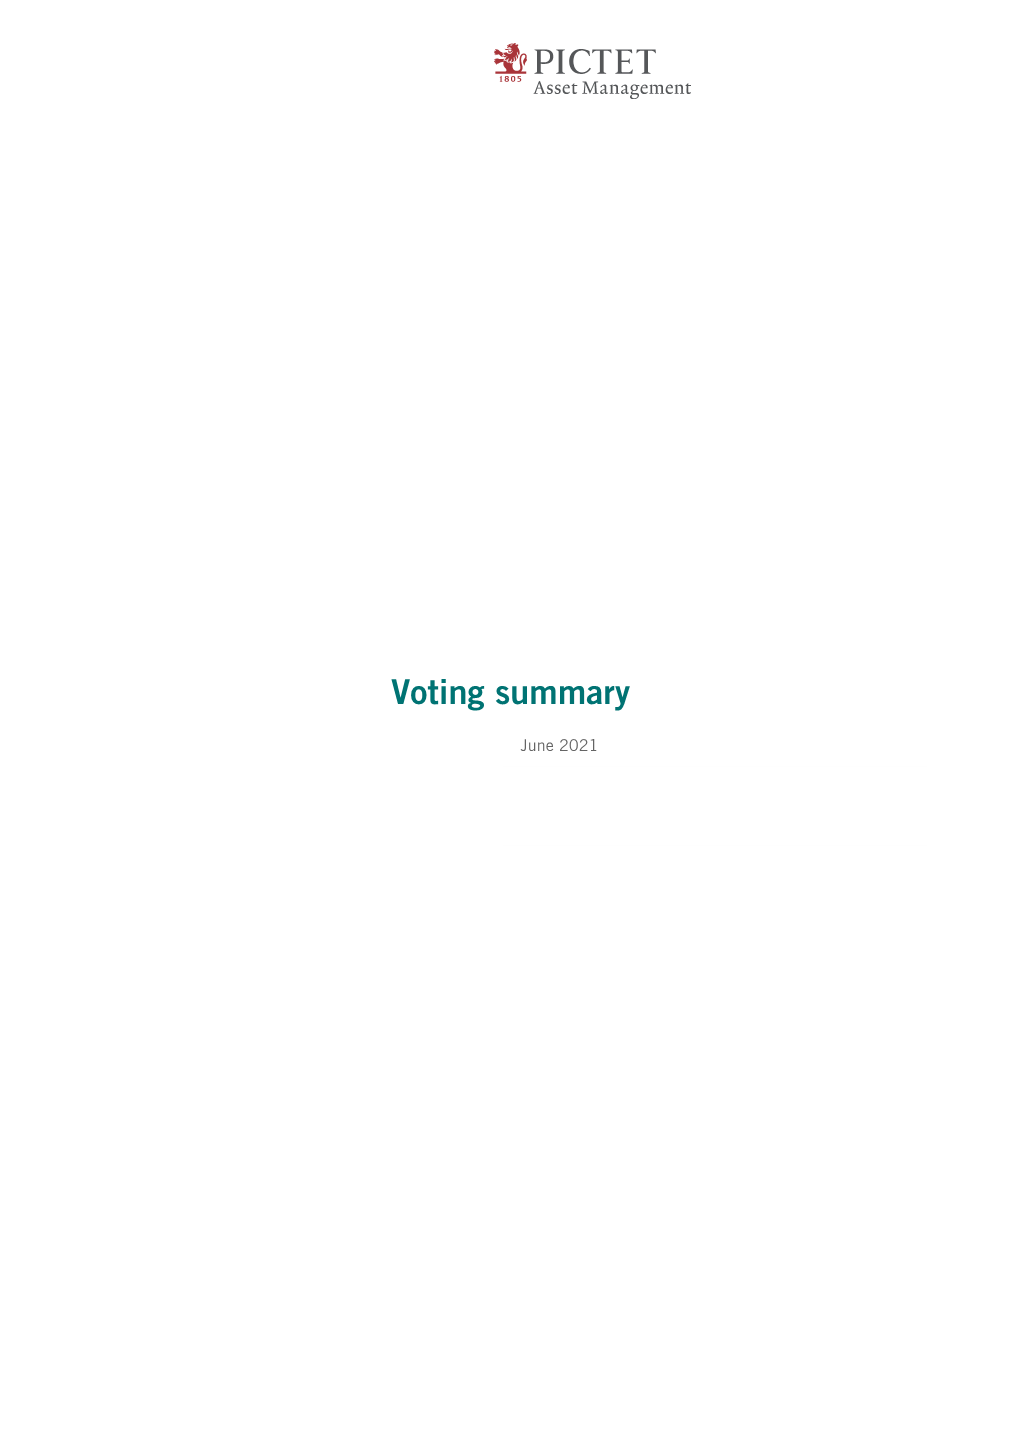 Voting Summary June 2021